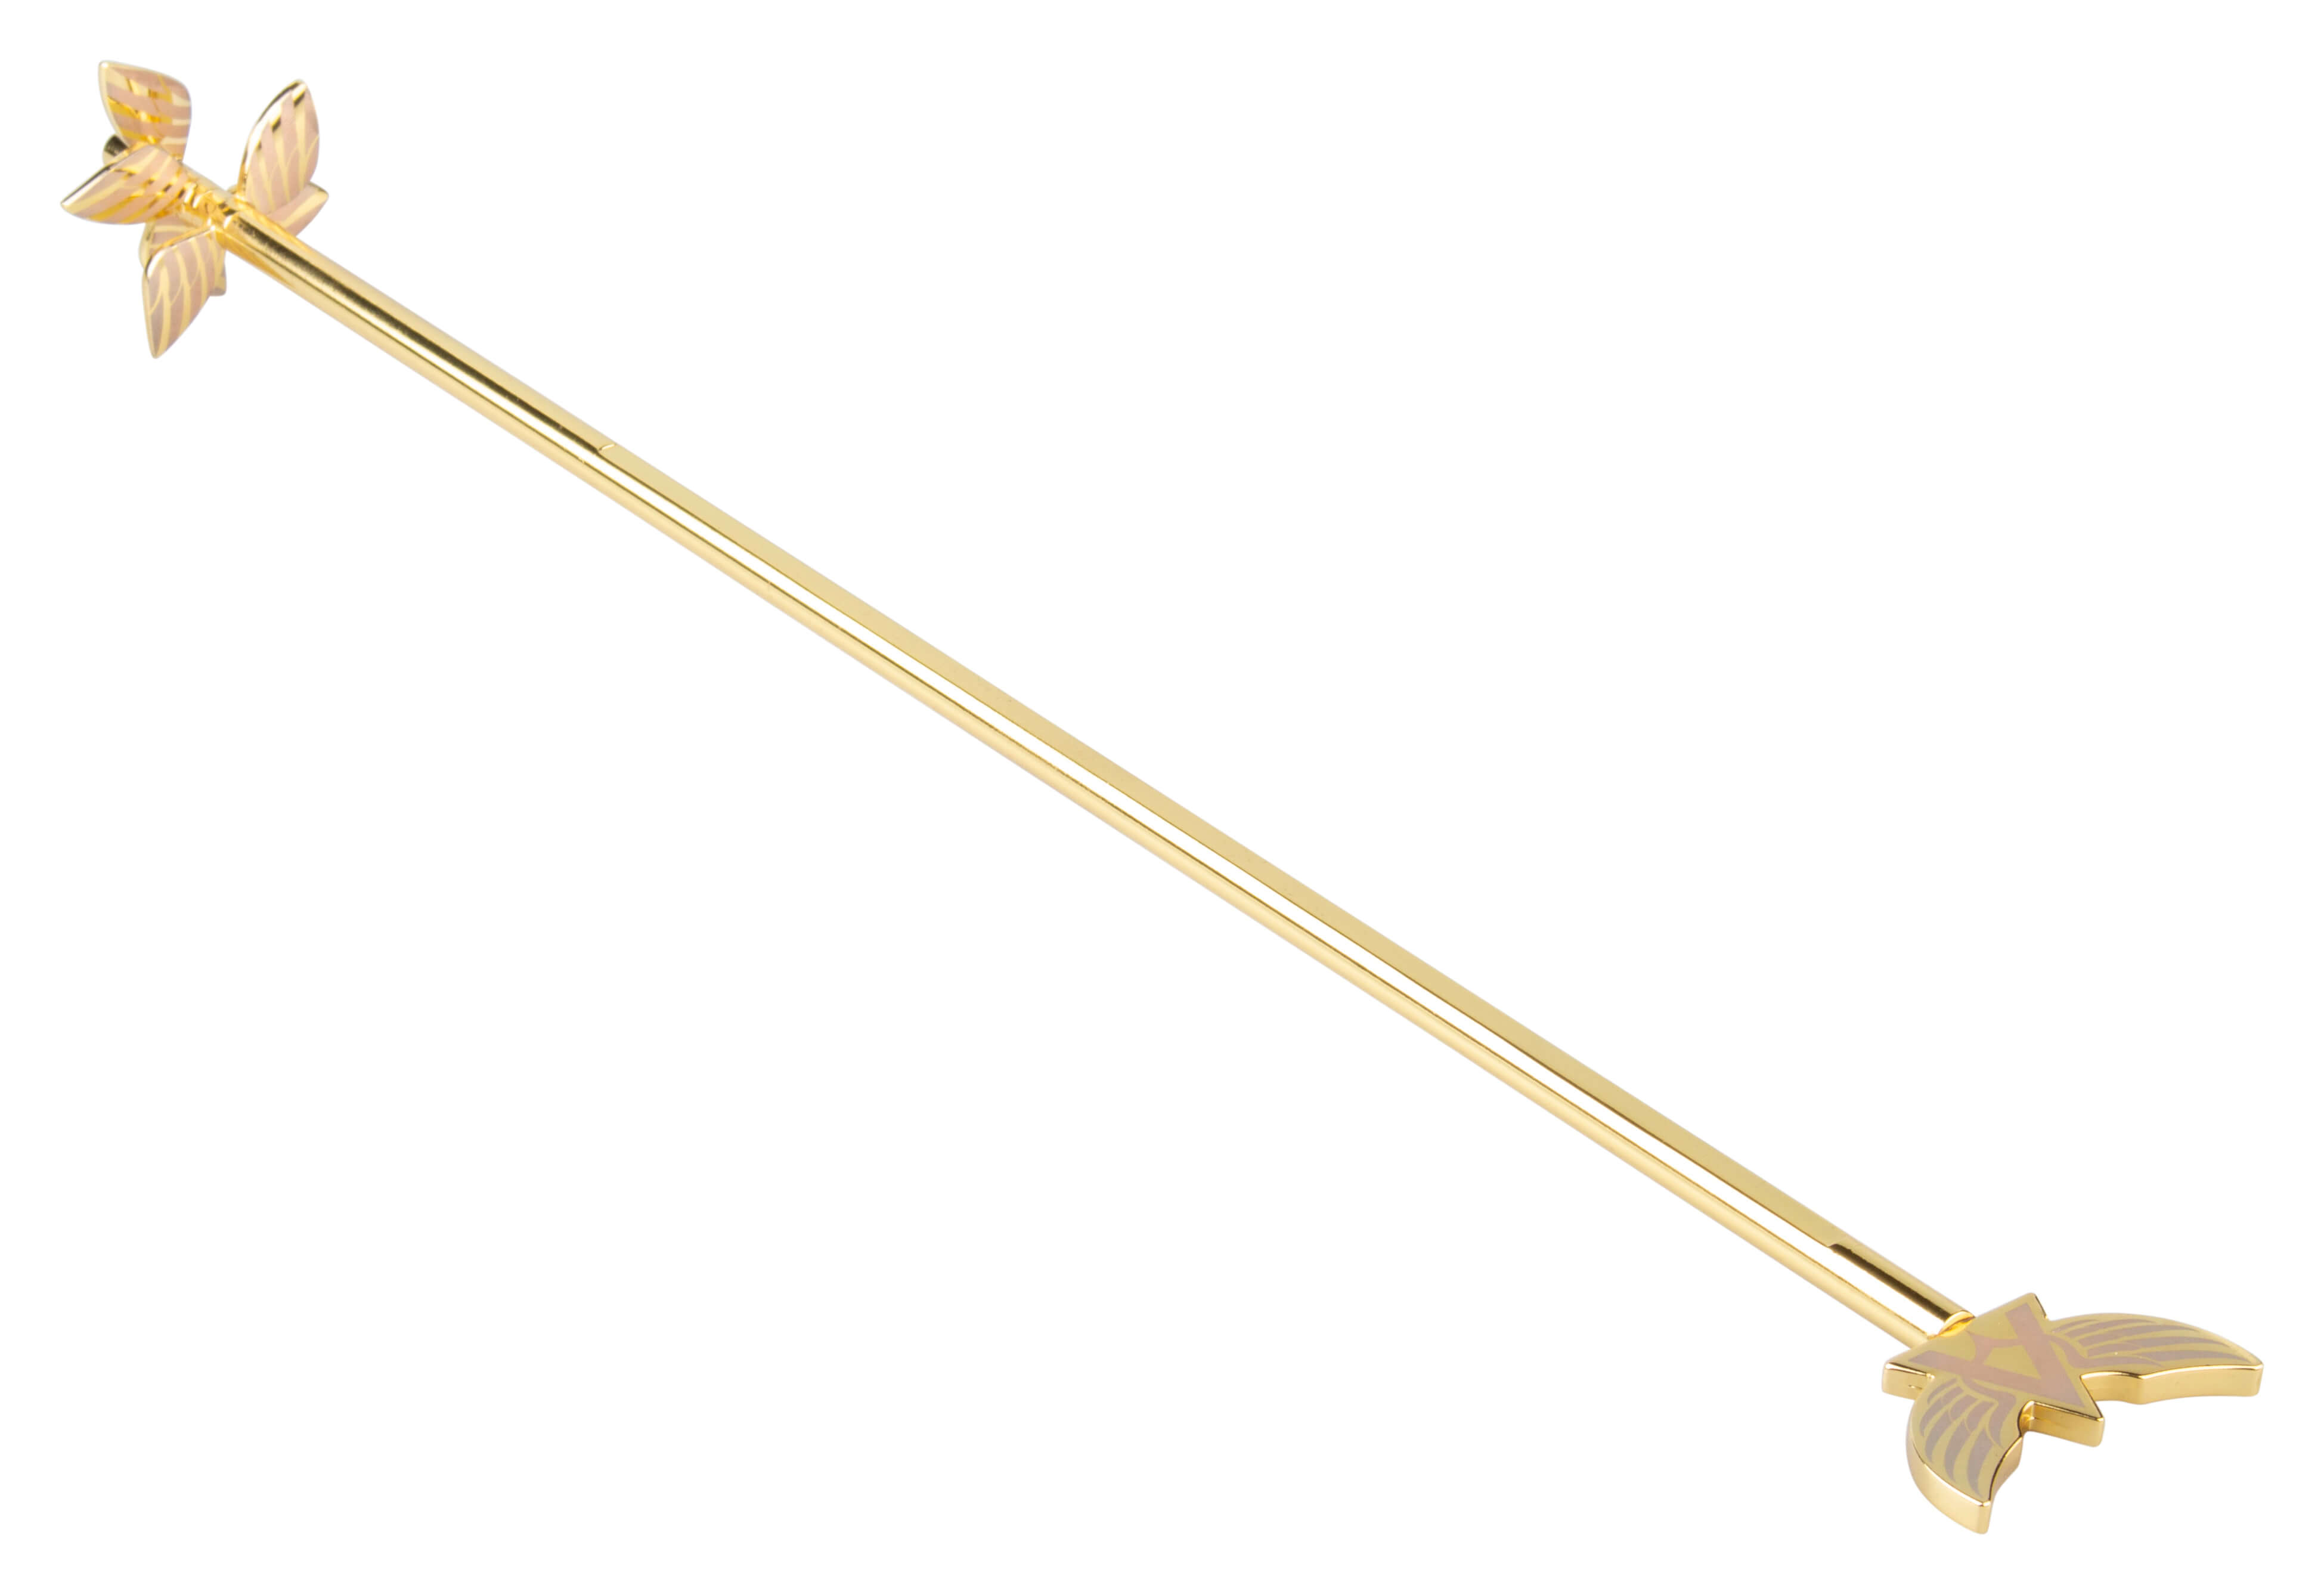 A Swizzlestick, goldfarben, Überbartools - 41,5cm